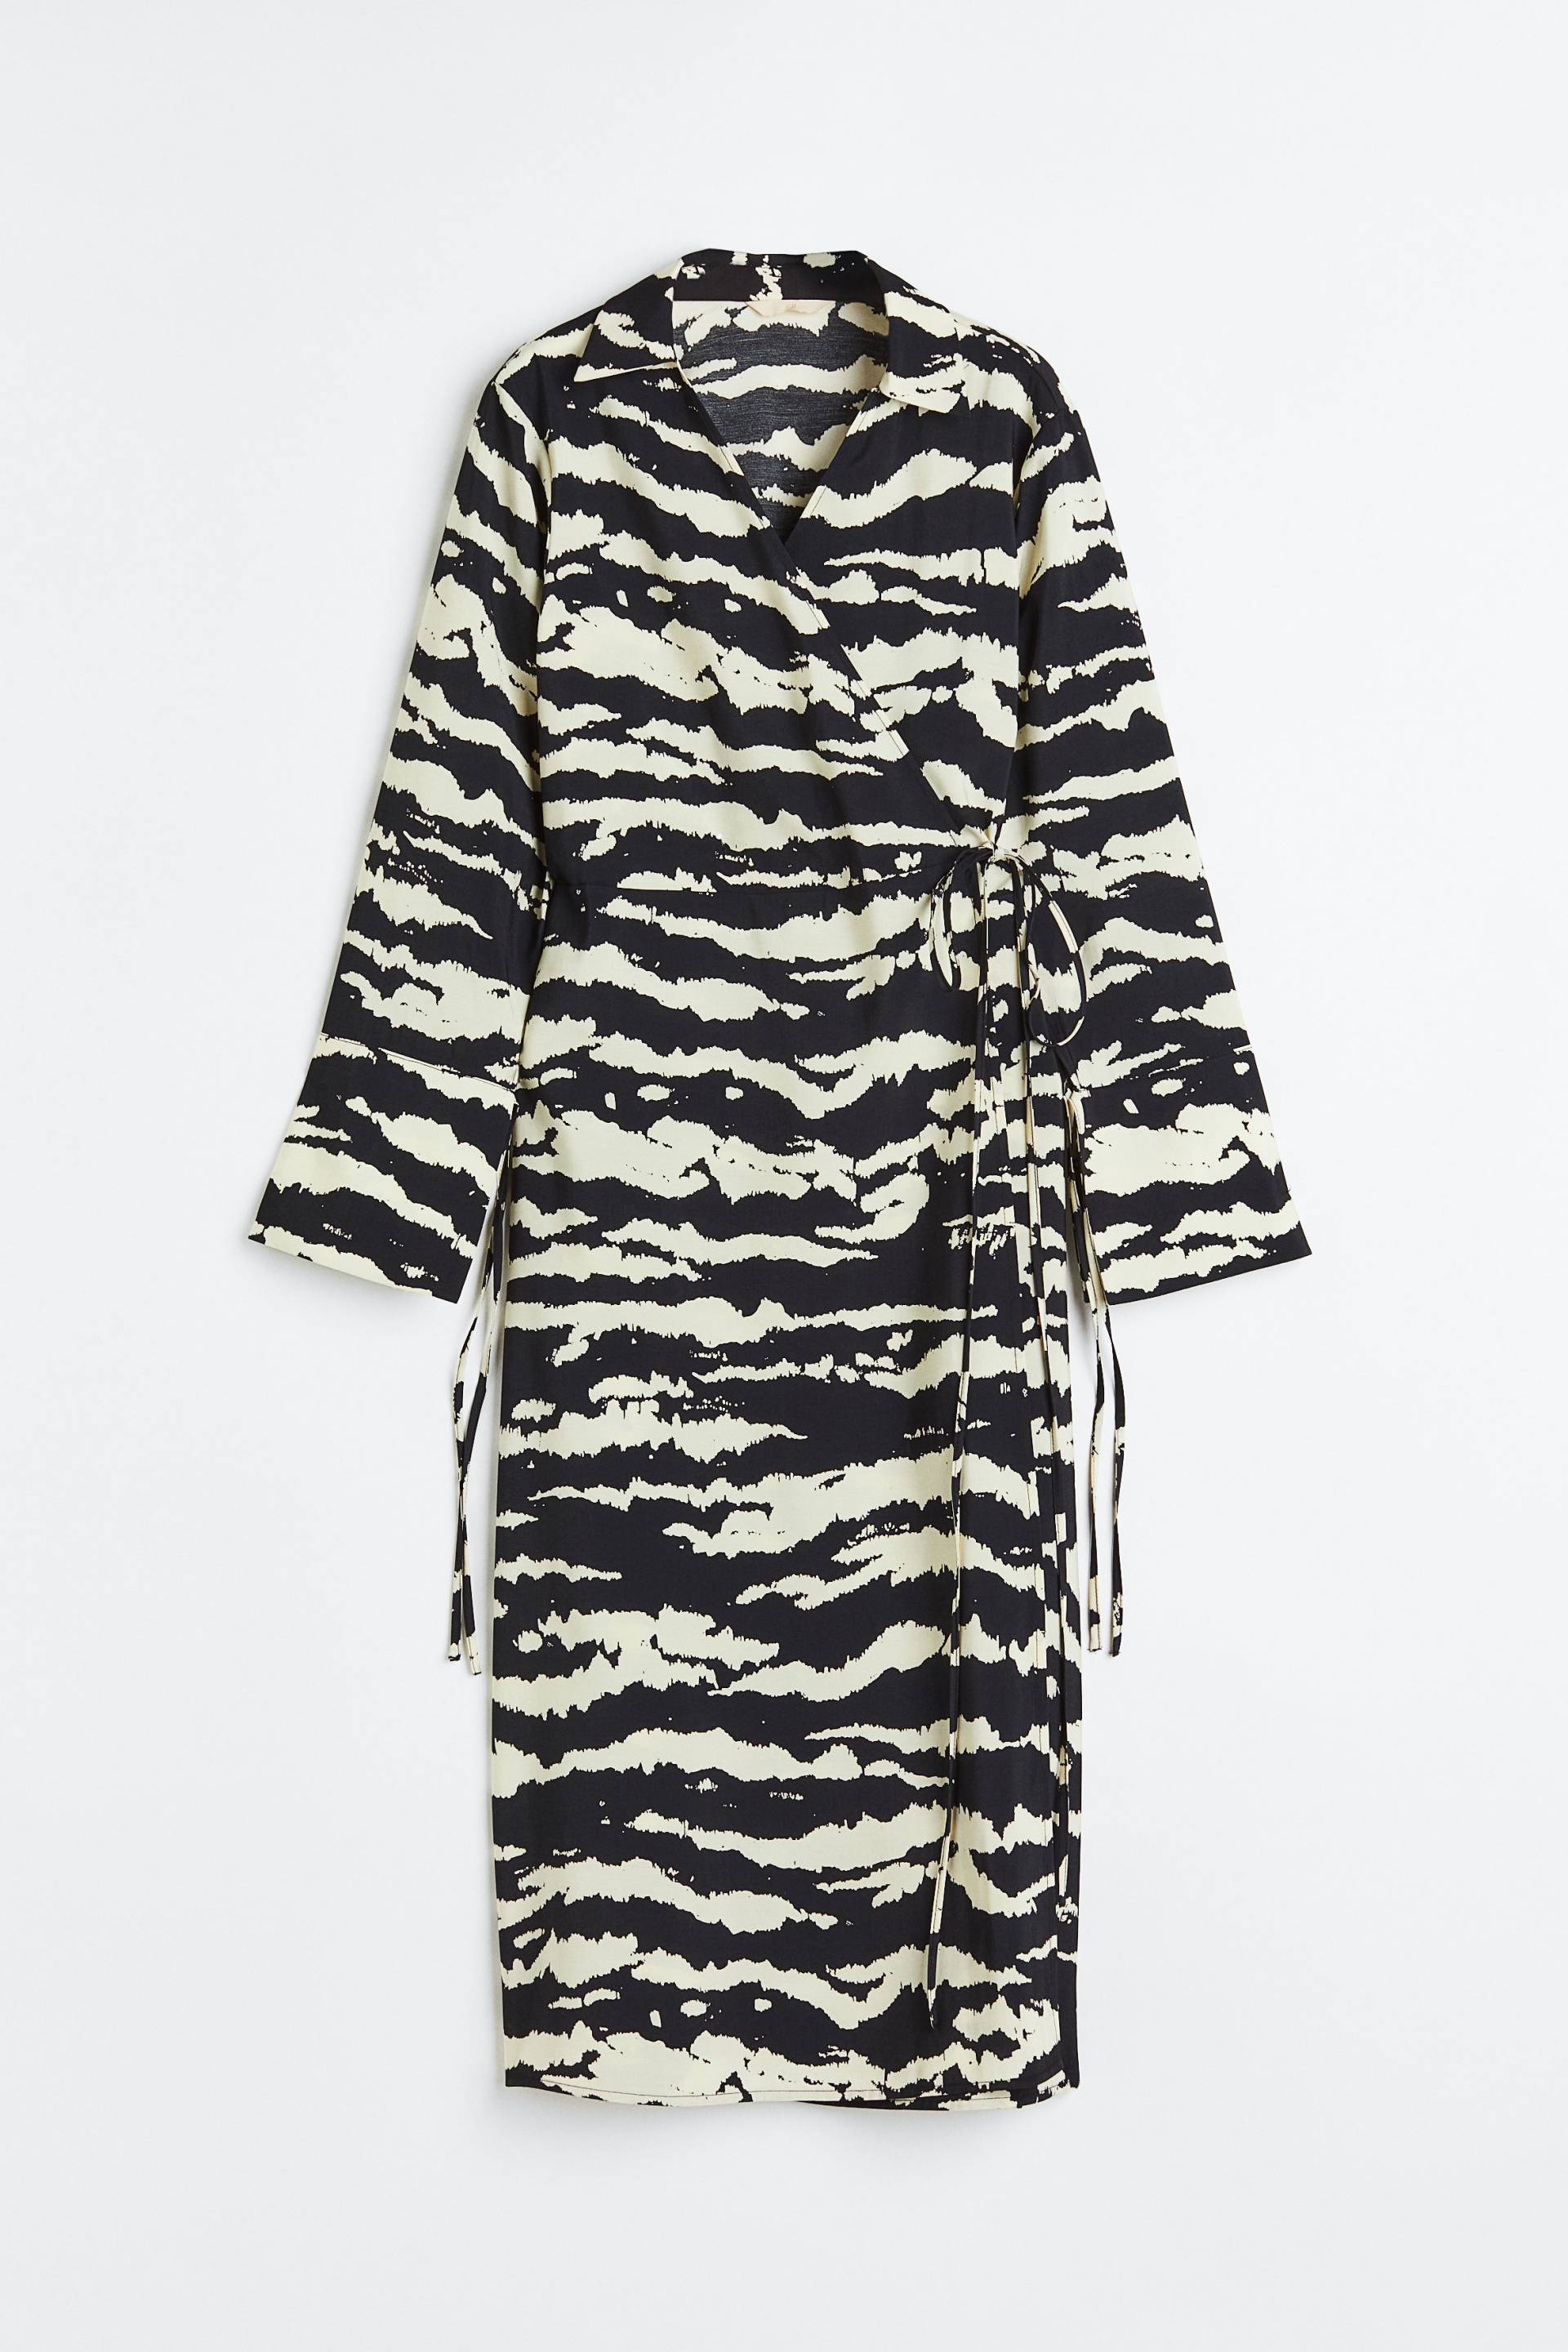 H&M Wickelkleid mit Kragen Schwarz/Tigerstreifen, Alltagskleider in Größe XXL. Farbe: Black/tiger-striped von H&M